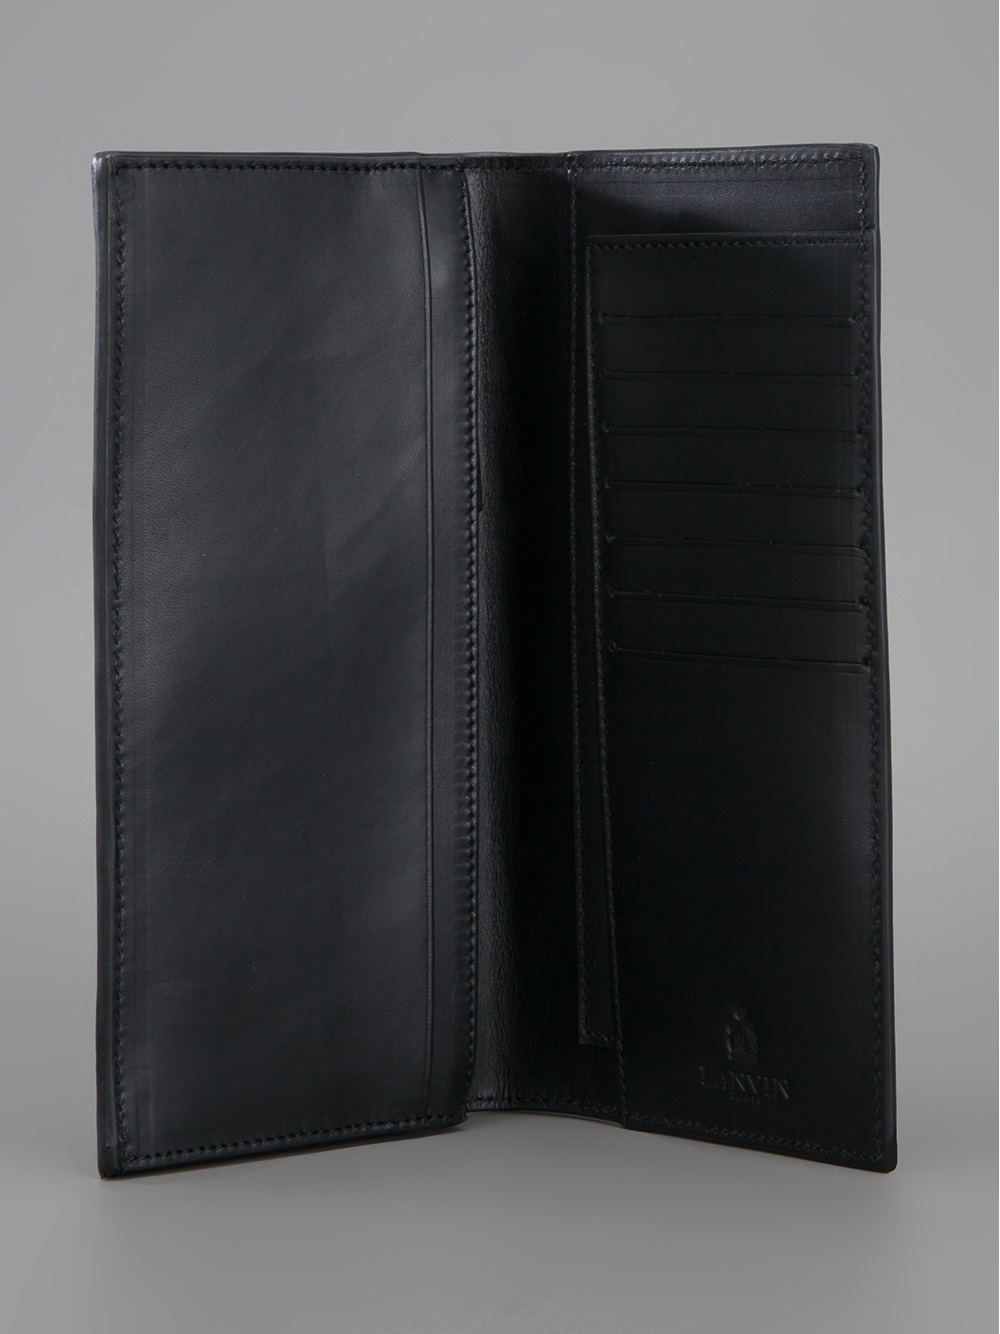 Lanvin Long Bill Fold Wallet in Black for Men - Lyst